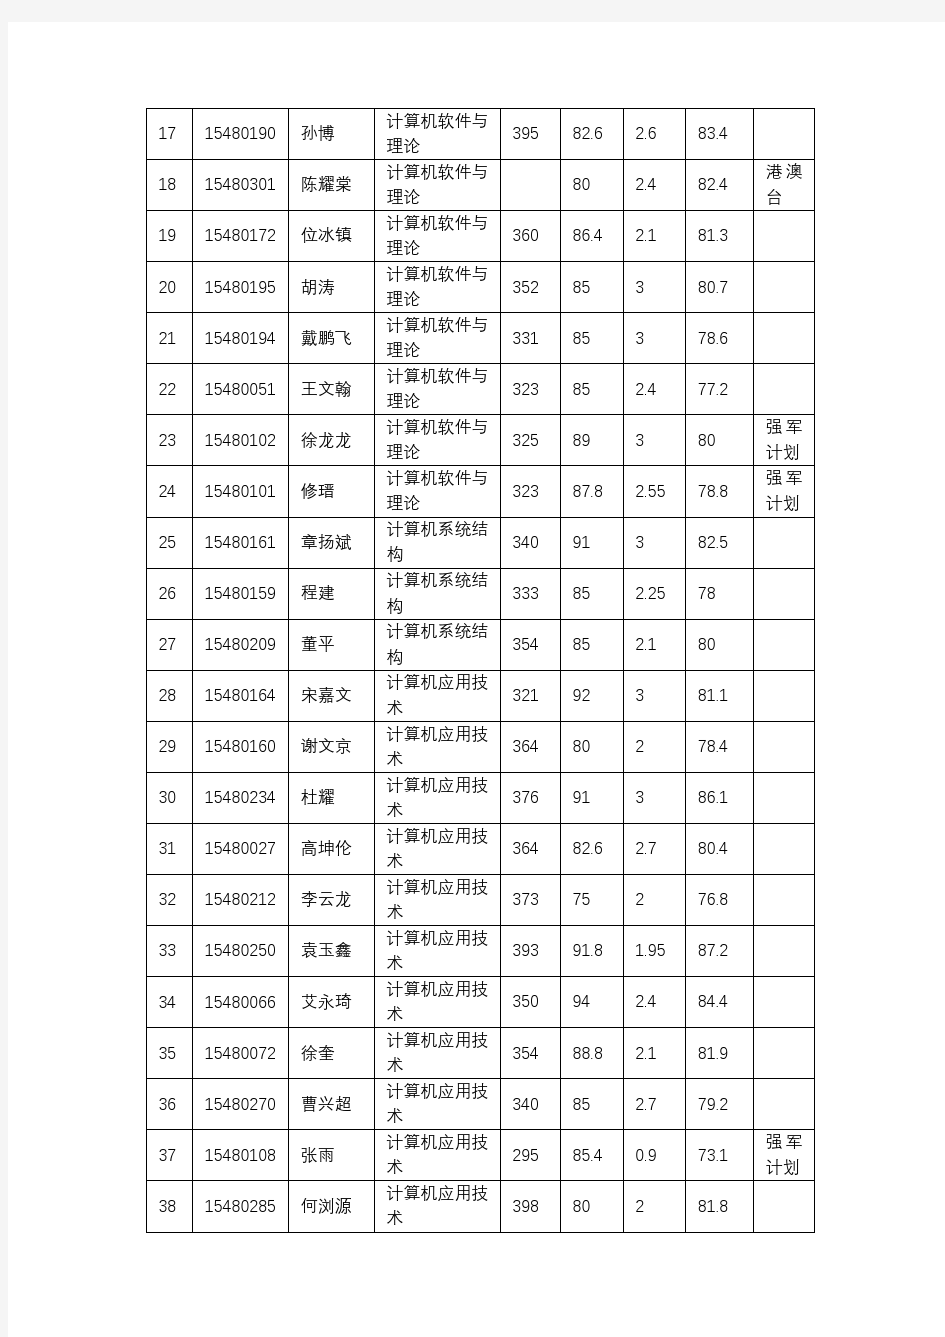 2015年北京大学信息科学技术学院考研录取名单